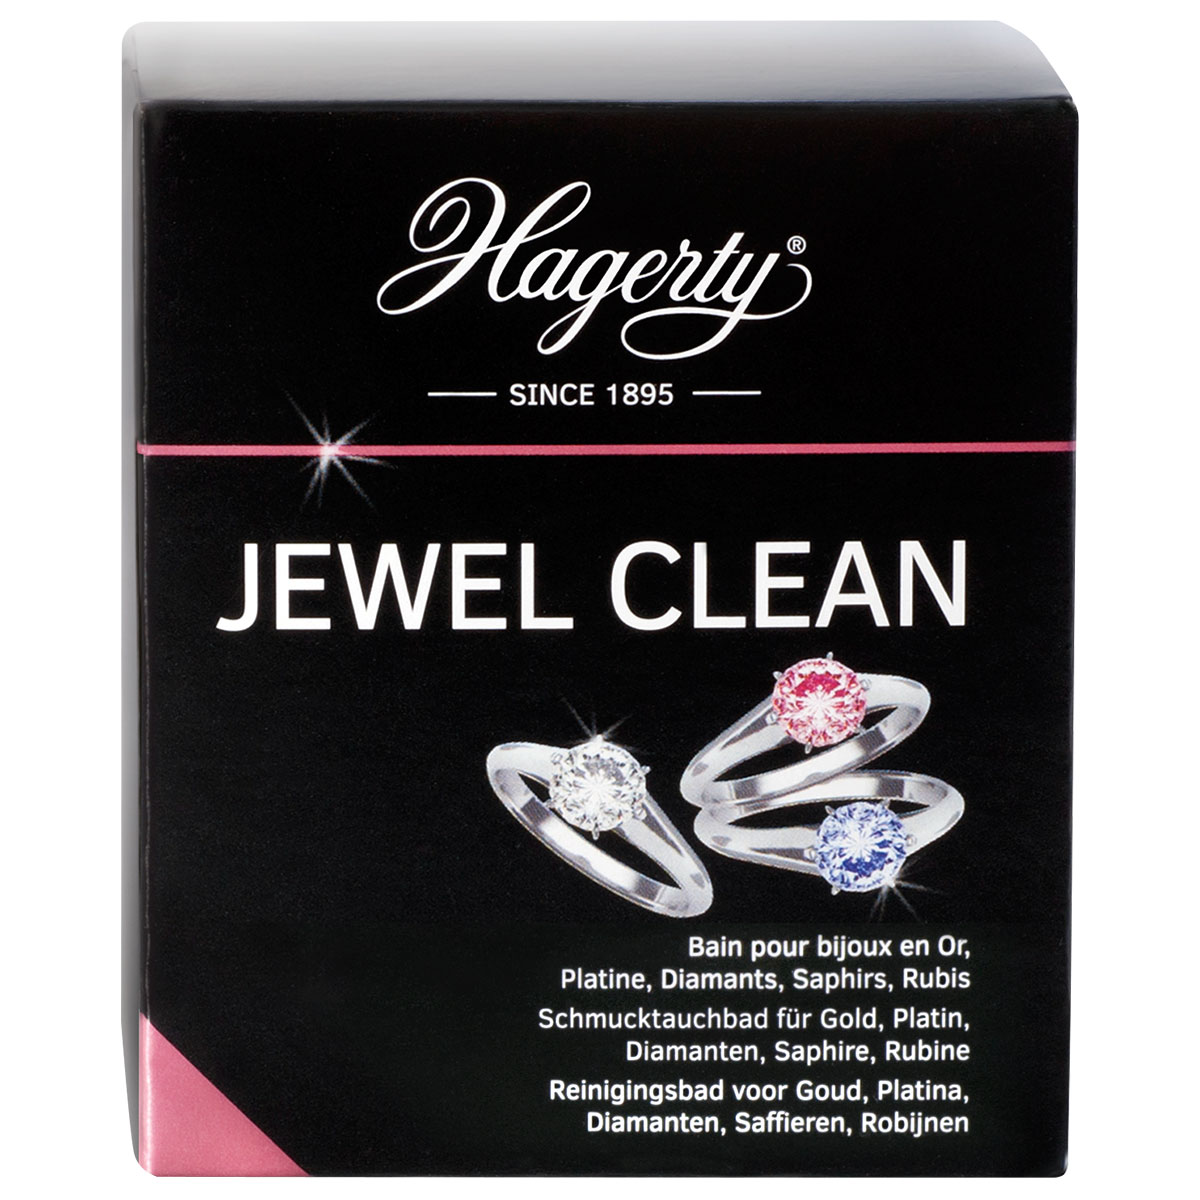 Hagerty Jewel Clean, dompelbad voor juwelen, 170 ml